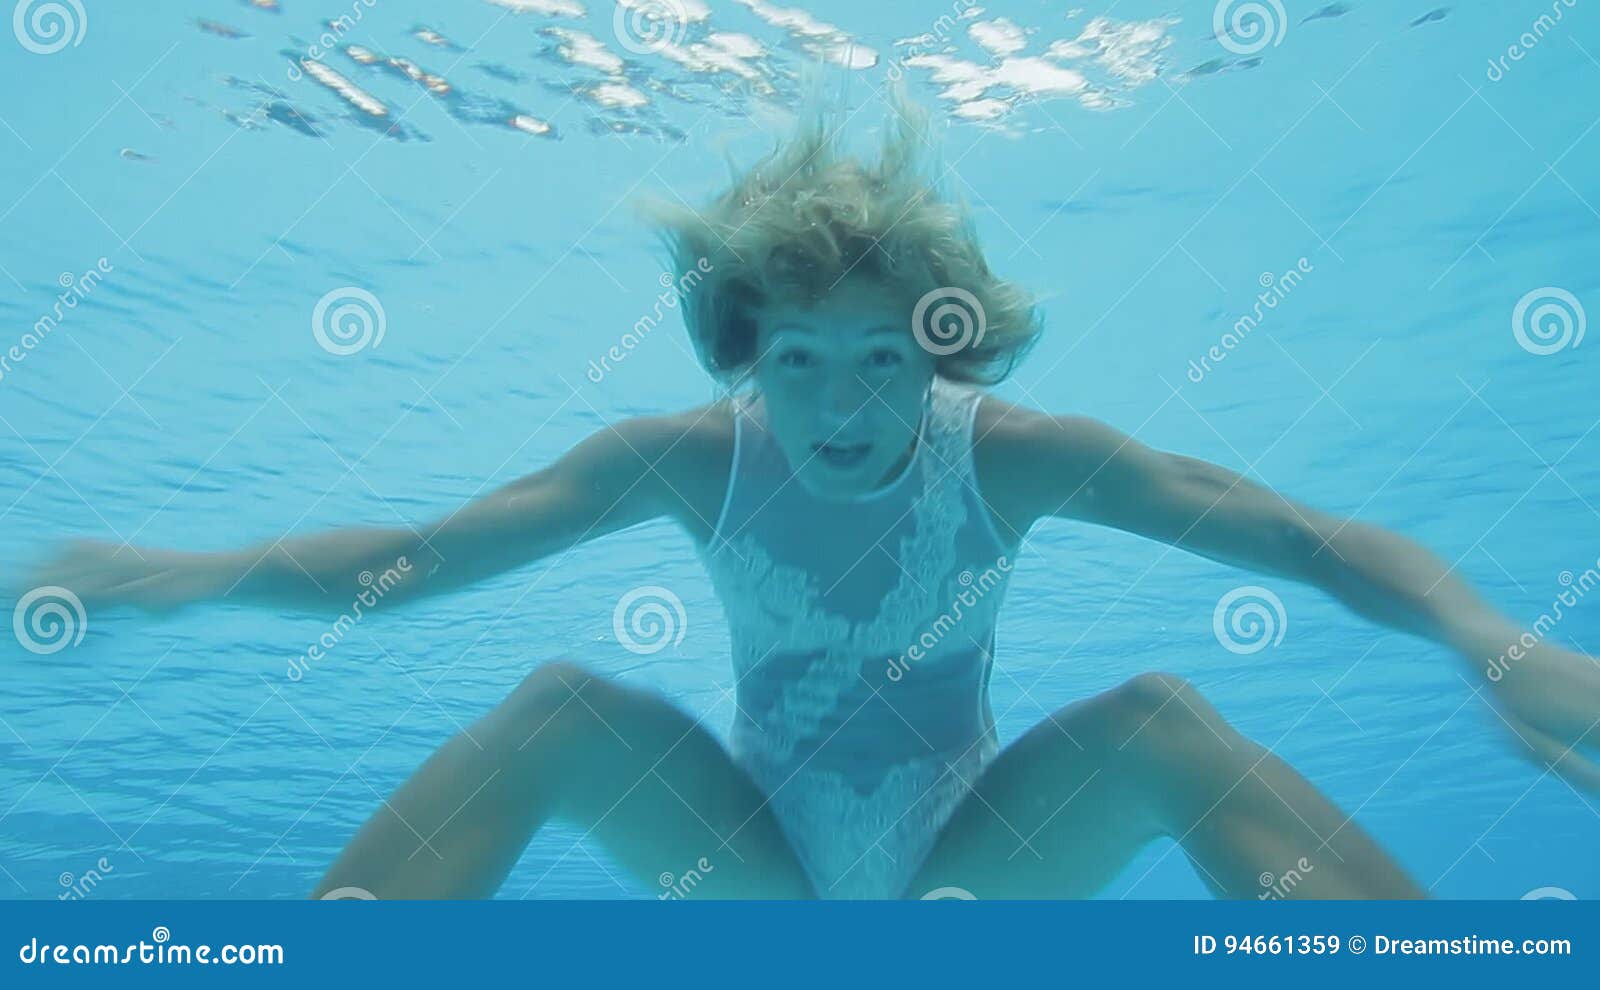 Снимай трусы купаться. Девушка в купальнике под водой. Девушка купается в бассейне. Девочка купается в бассейне. Девушки в бассейне в купальниках под водой.